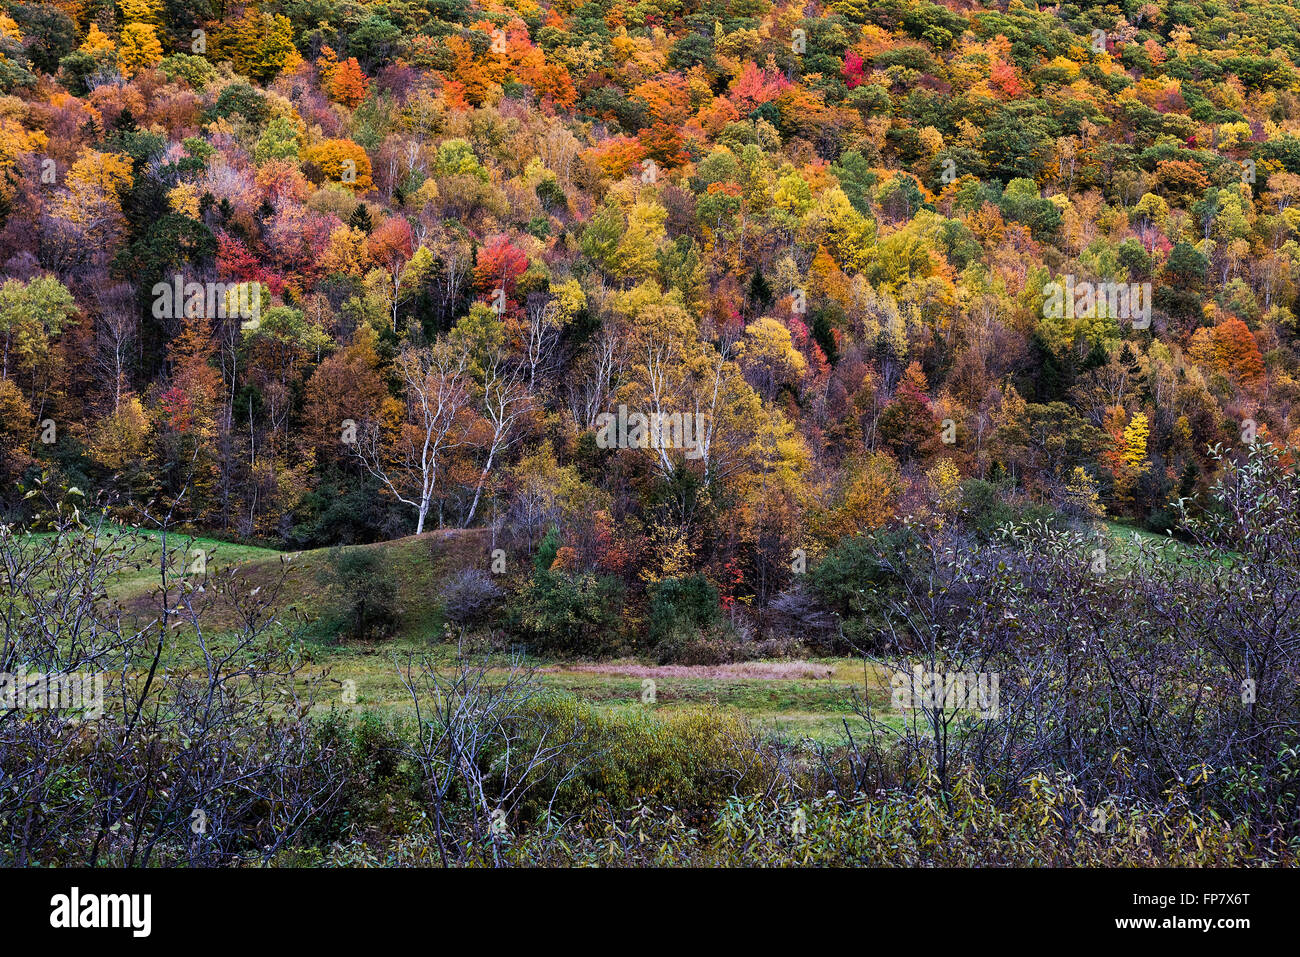 Colorful autumn trees on a mountainside, Killington, Vermont, USA Stock Photo